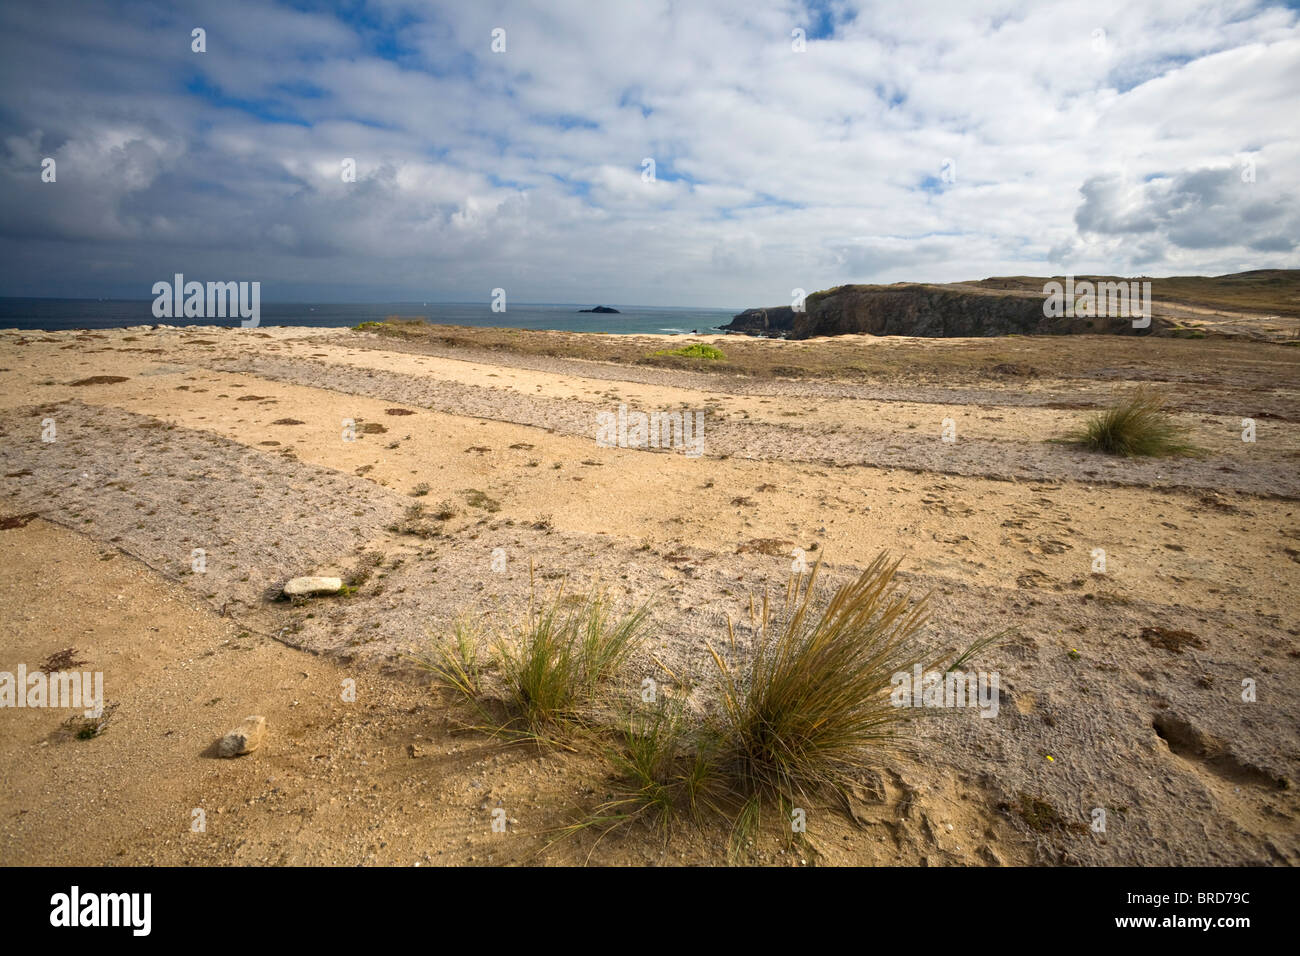 The struggle against soil erosion of the Quiberon peninsula. Lutte contre l'érosion des sols de la presqu'île de Quiberon. Stock Photo